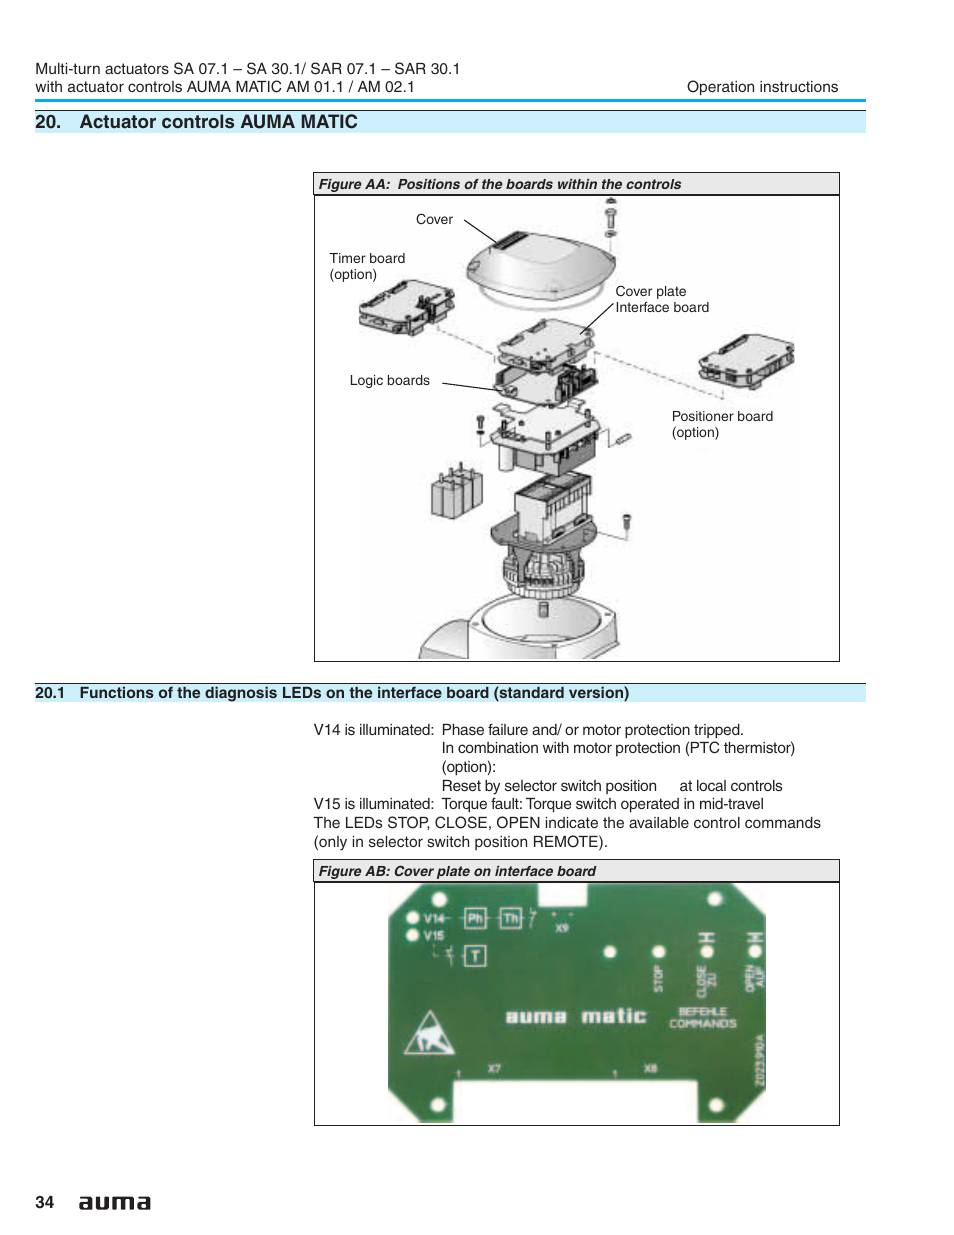 Actuator controls auma matic, Collective fault signal 34,35, Interface